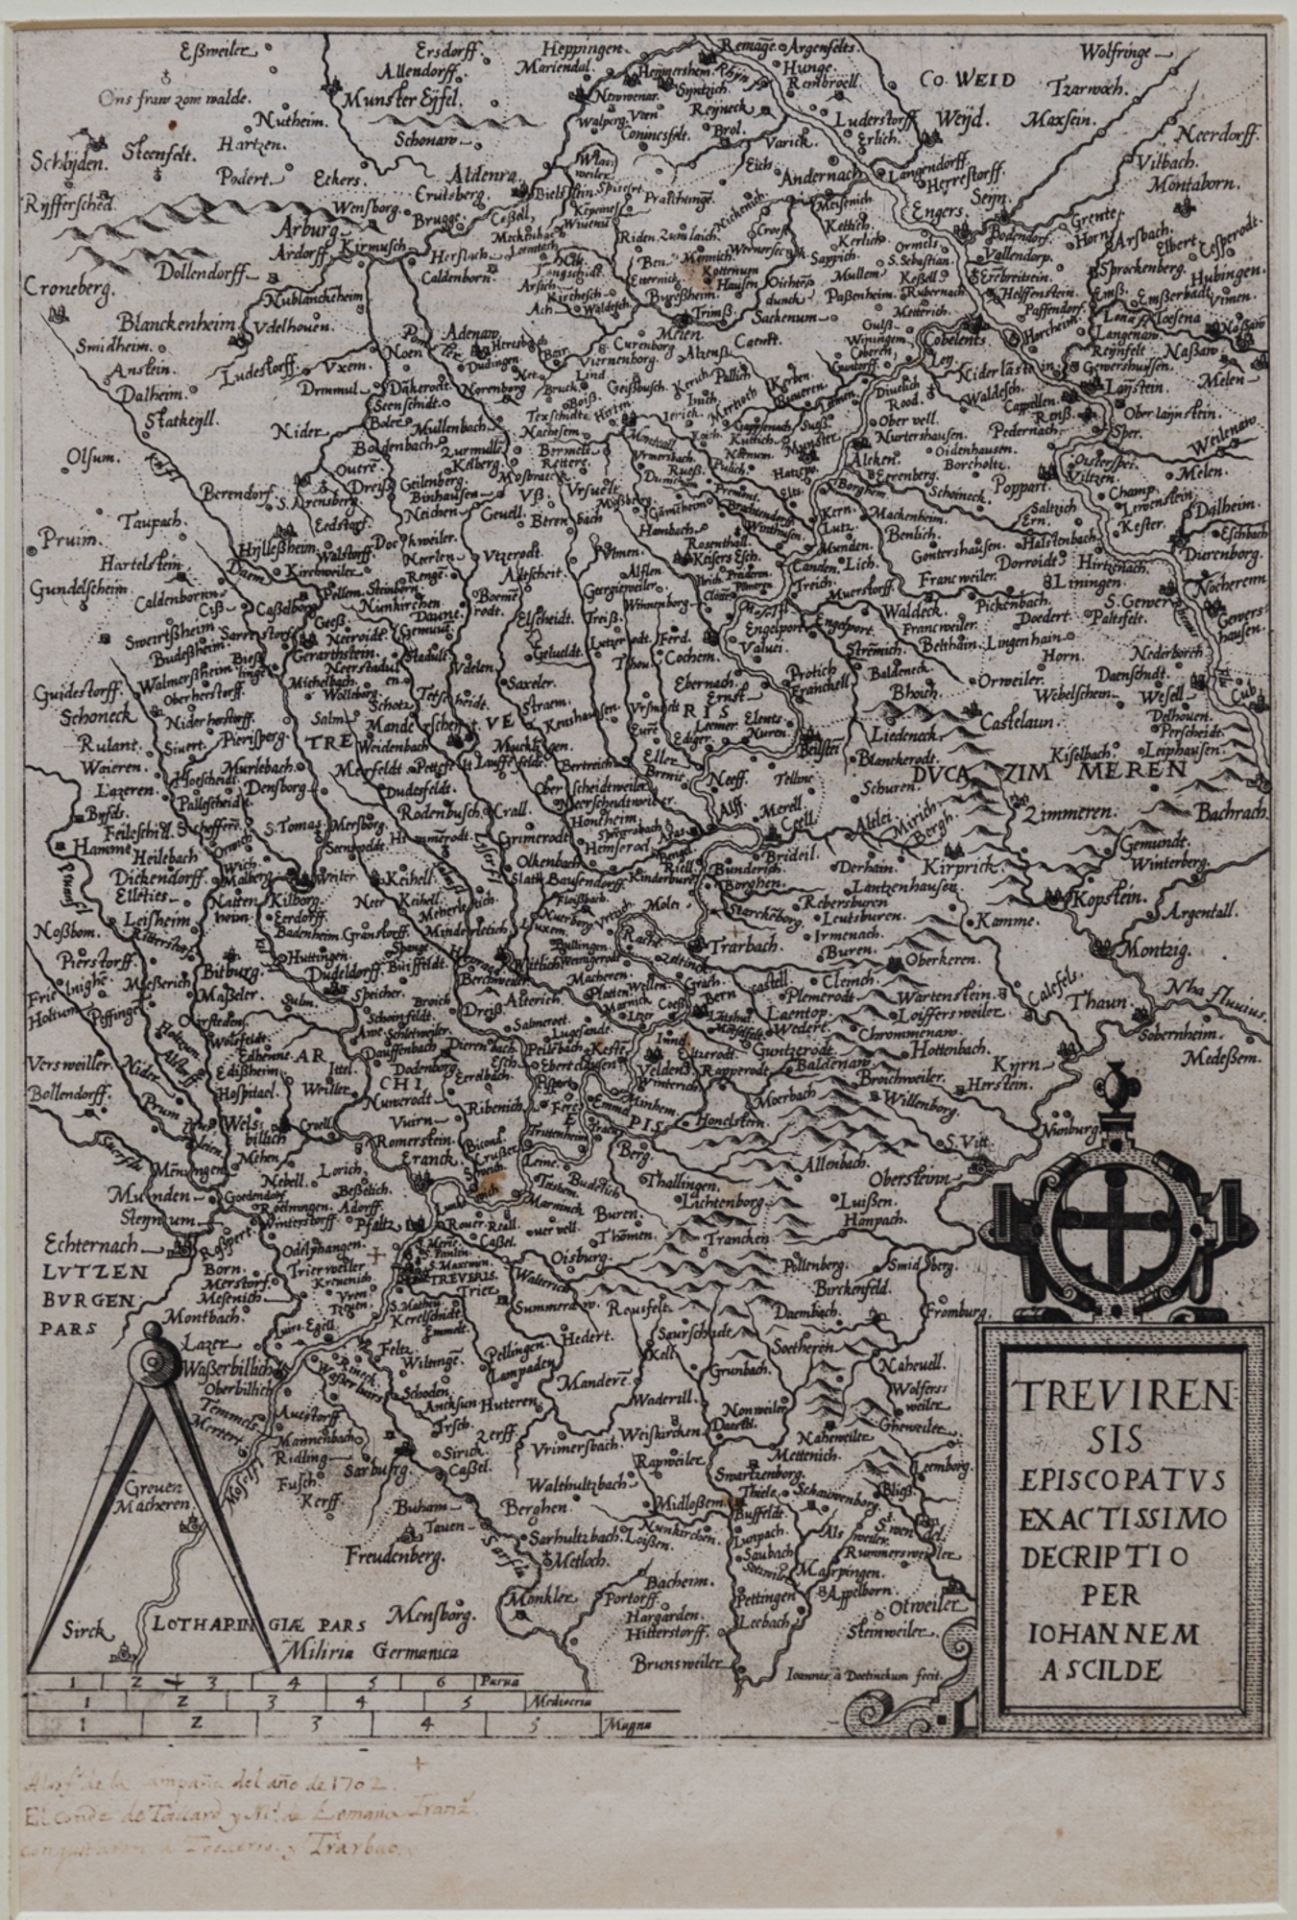 Kupferstichkarte des Erzbistums Trier